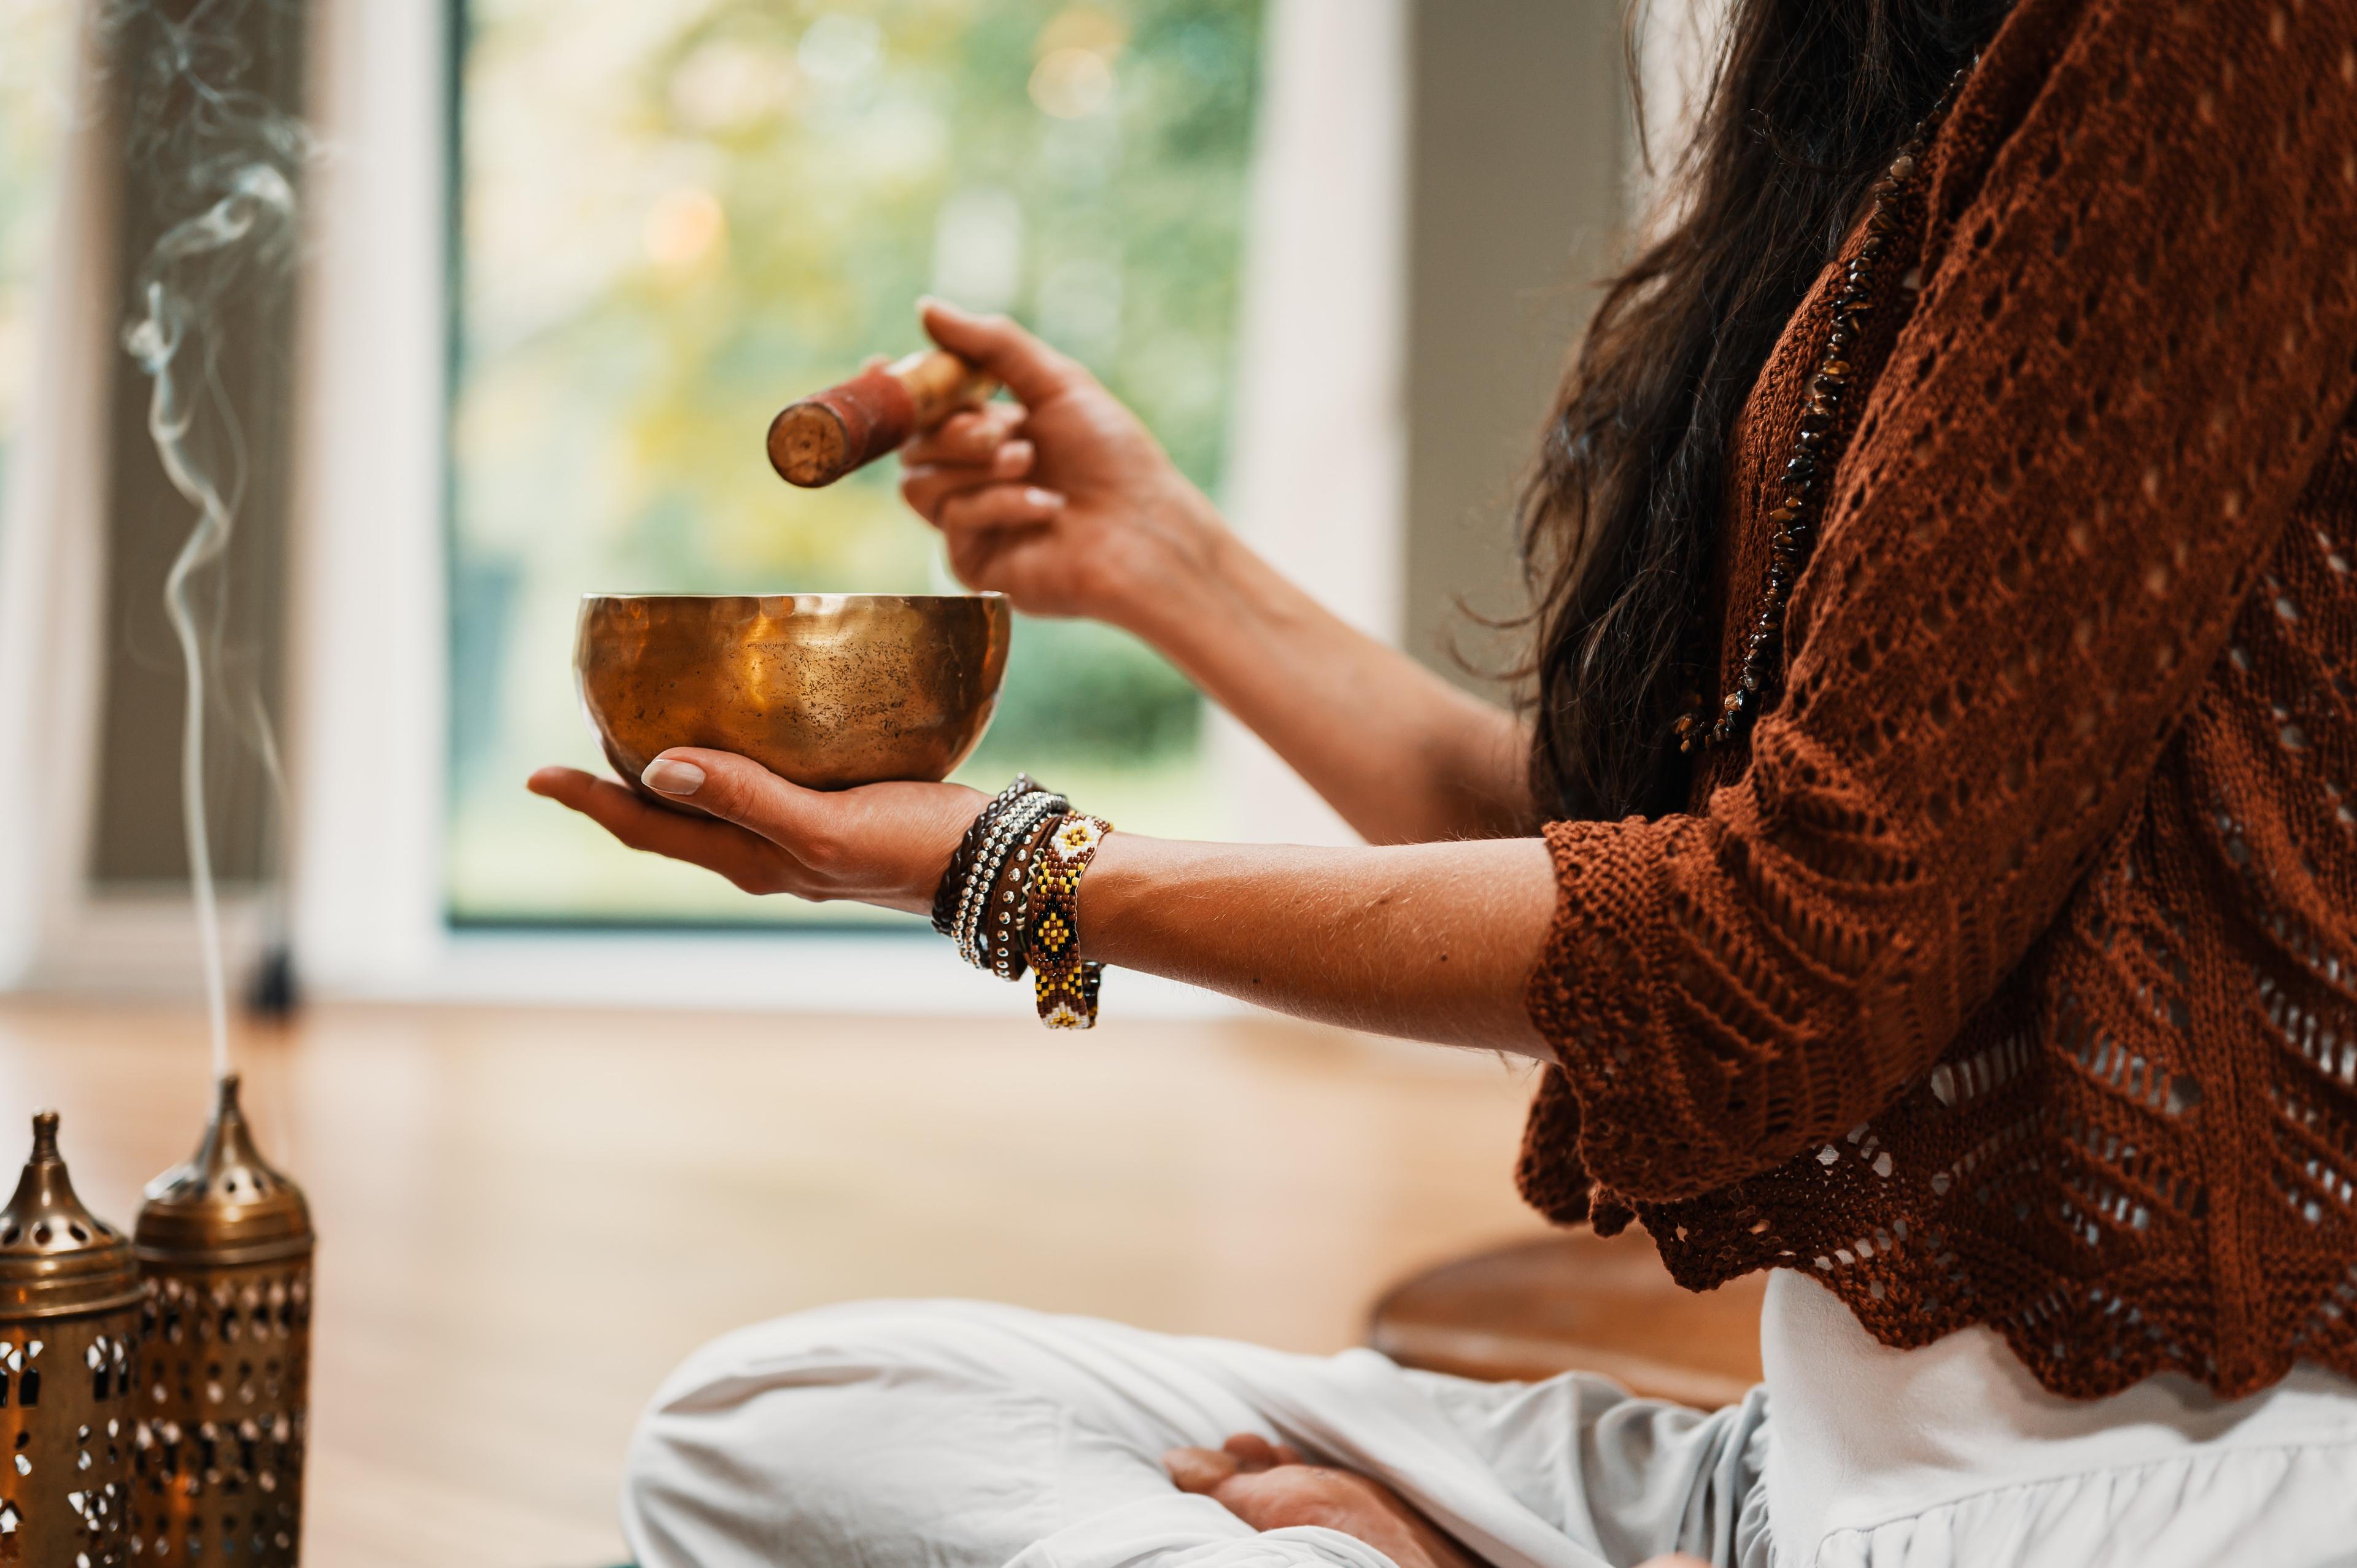 Medytacja - jak zacząć regularnie medytować? Jak zacząć medytować? Prosta medytacja dla początkujących pokazująca od czego zacząć